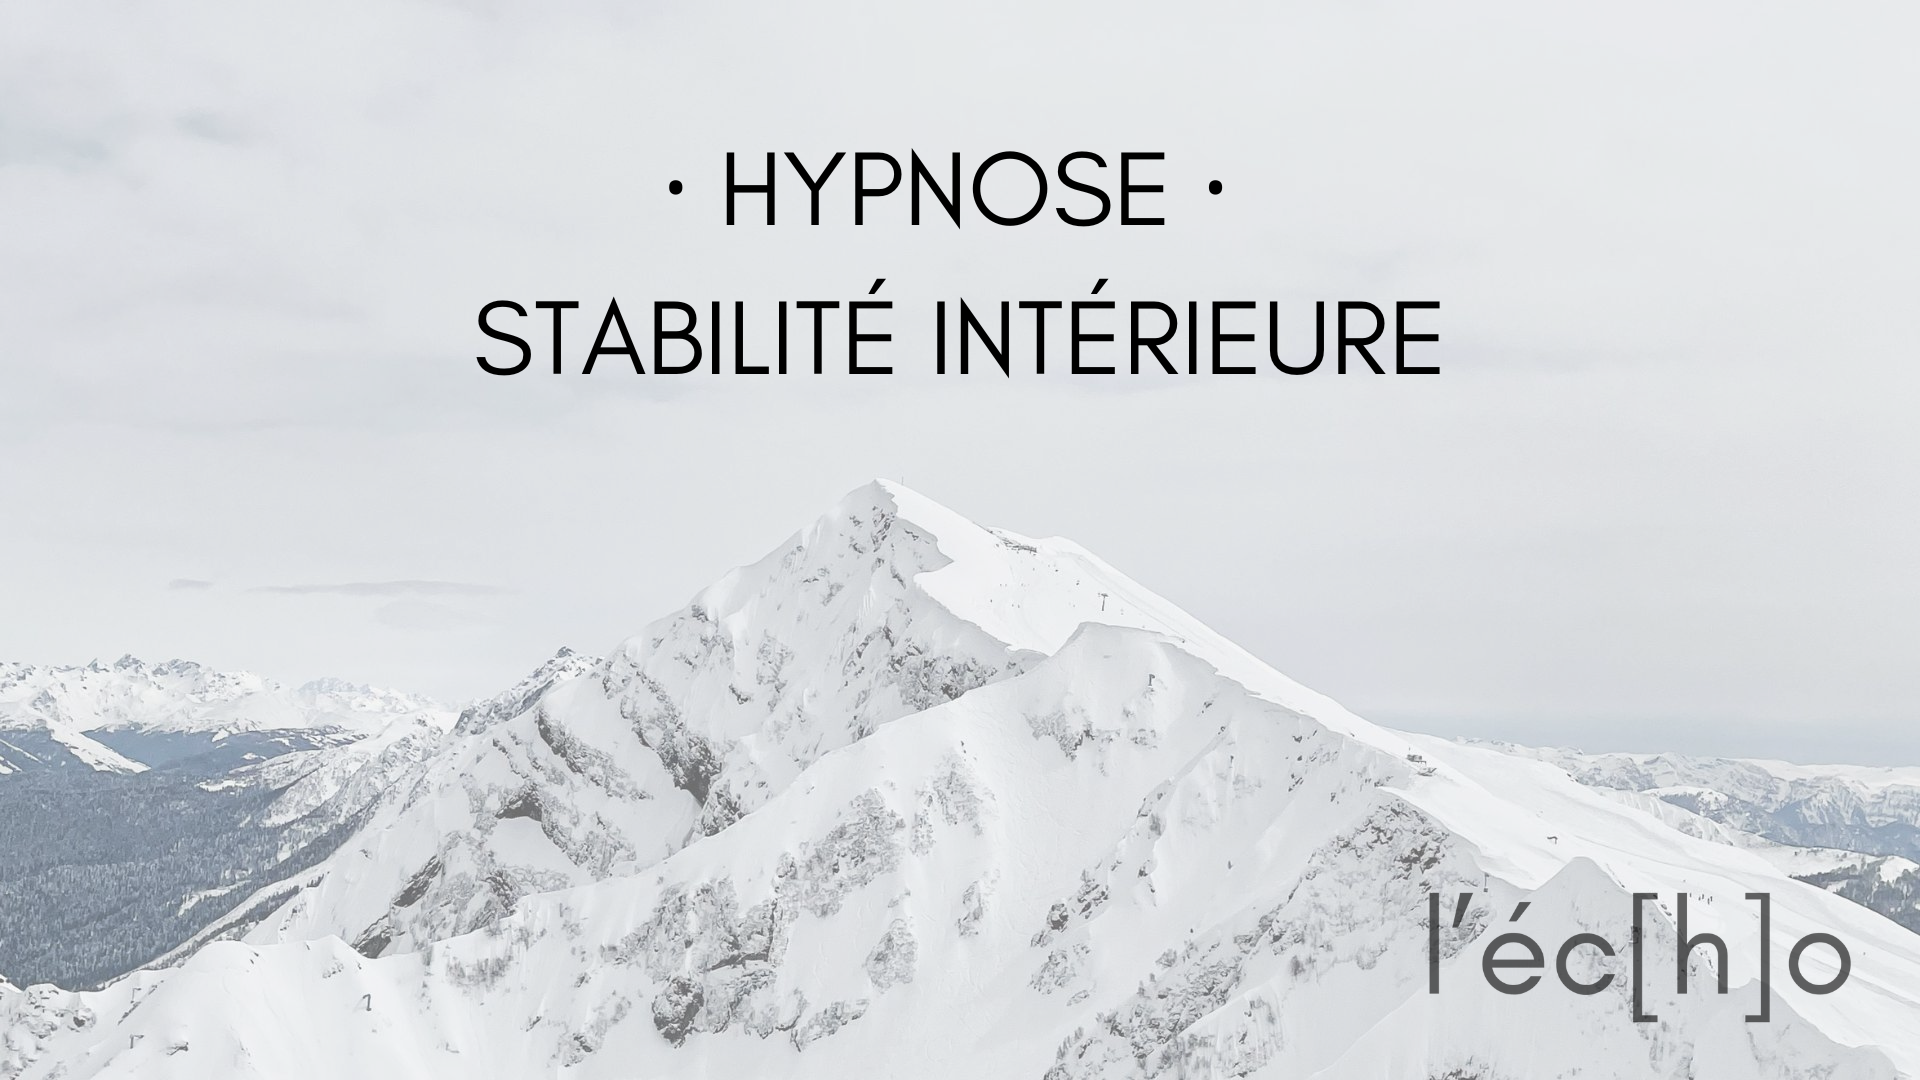 Auto-hypnose : stabilité intérieure